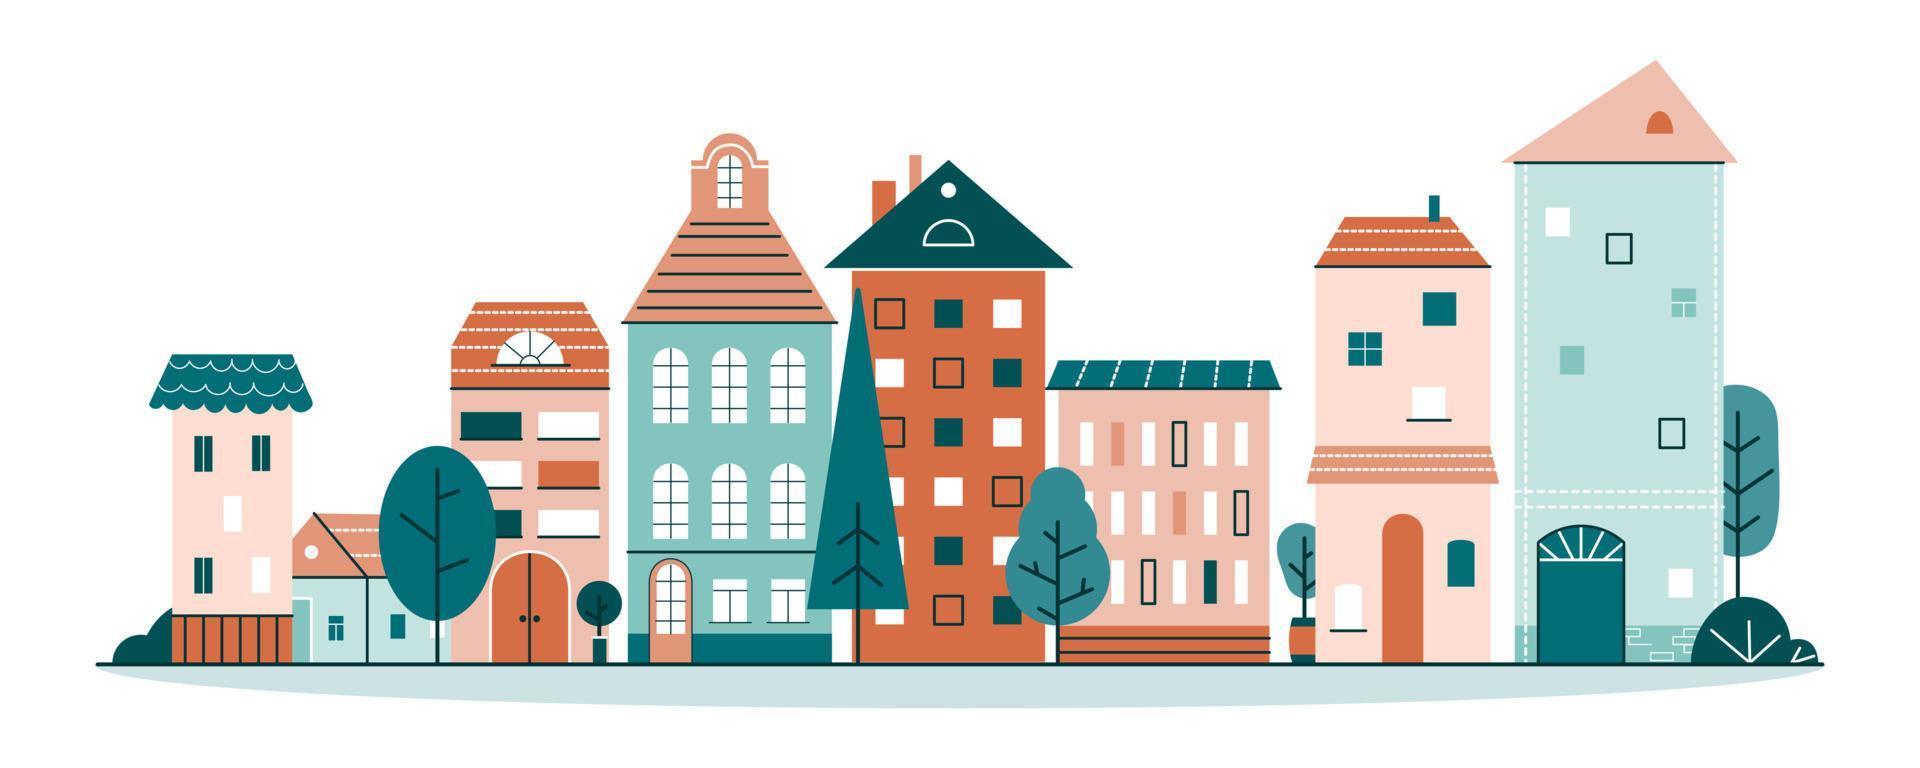 schattige stad met kleine huisjes in scandinavische stijl. straat van stadje met gezellige huizen en bomen. platte cartoon vectorillustratie geïsoleerd op een witte achtergrond vector